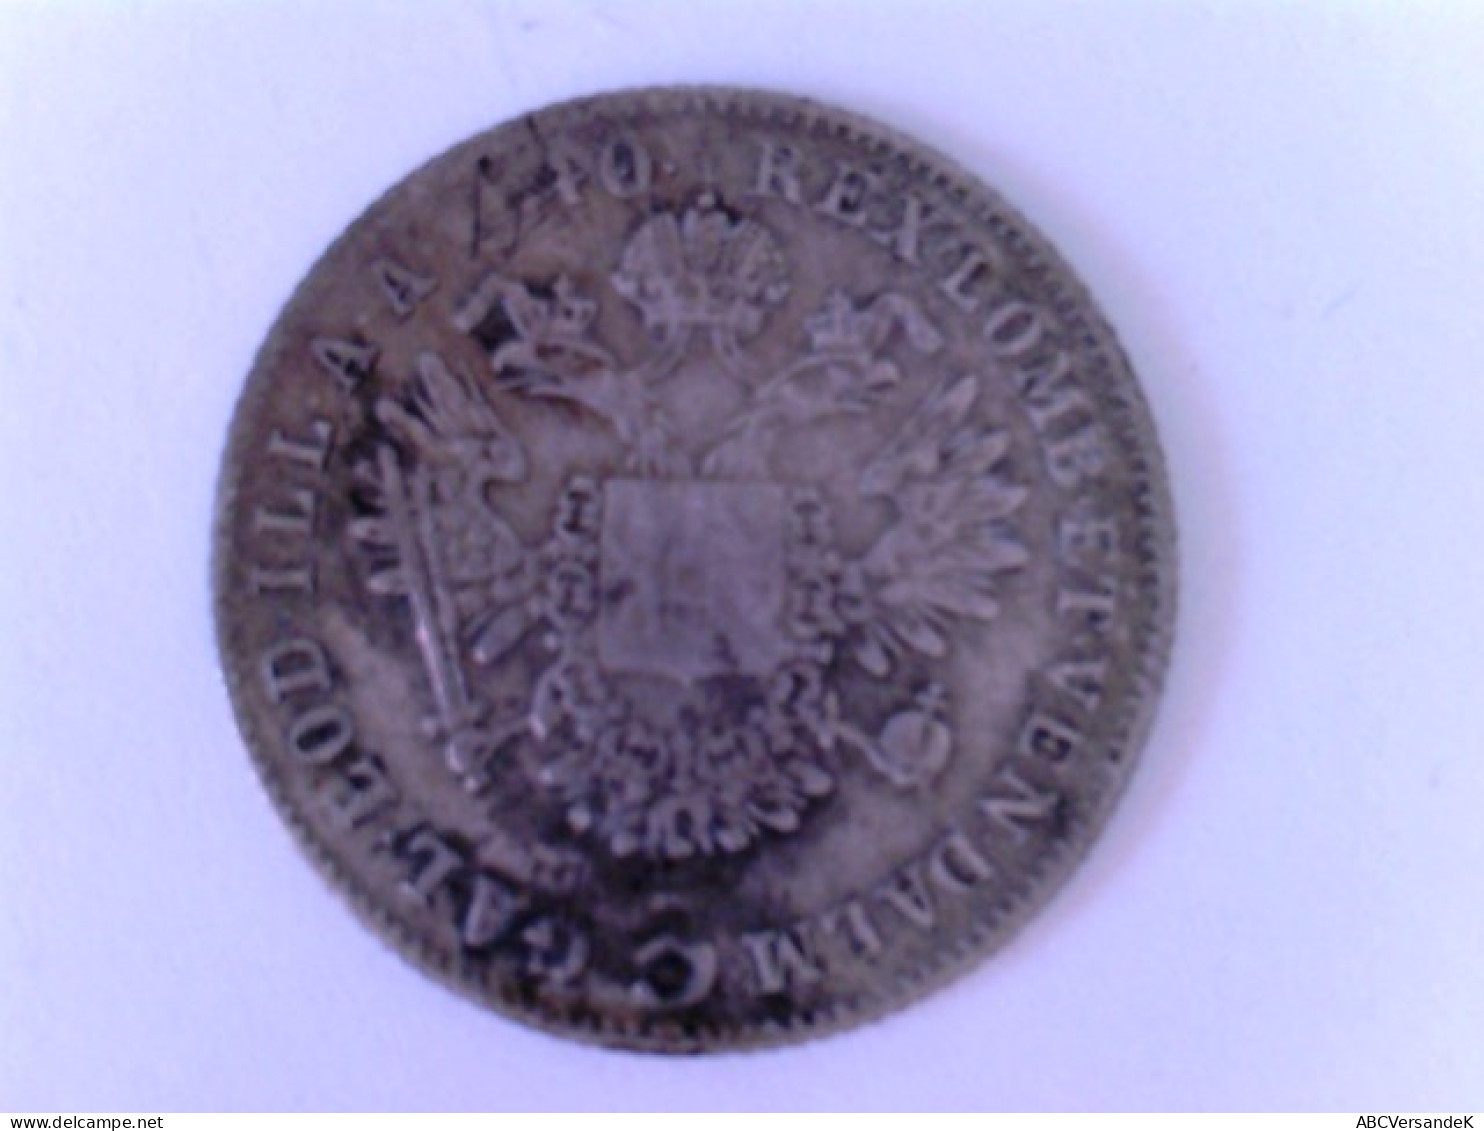 Münze Österreich: 5 Kreuzer Ferdinand 1, 1840 C, Silber - Numismatique